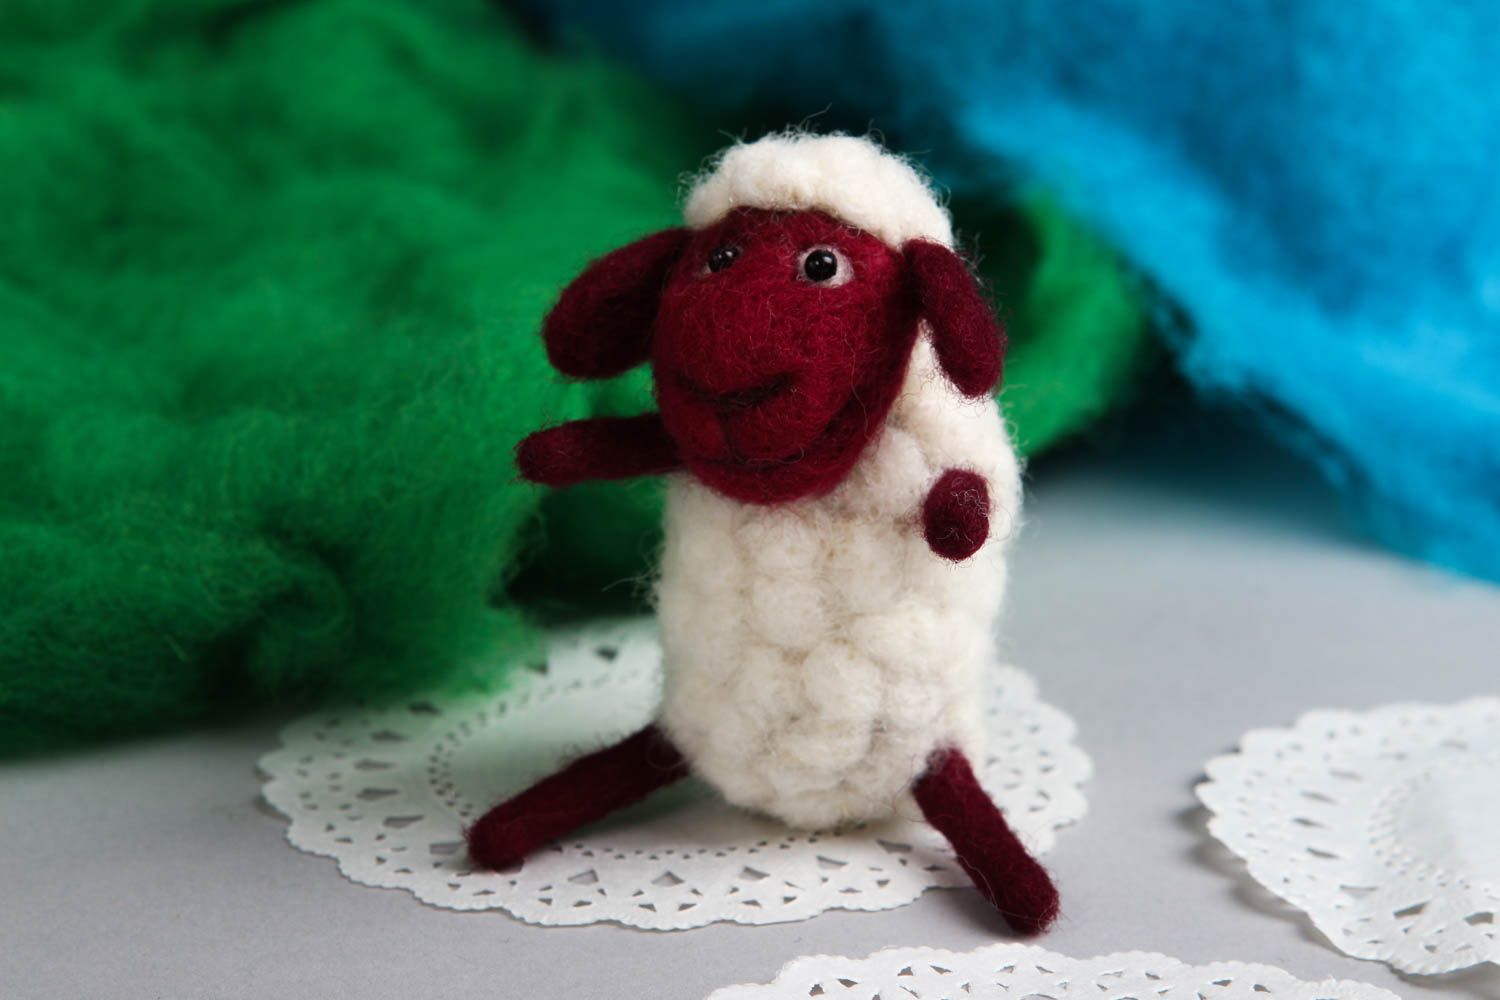  Игрушка ручной работы интерьерная игрушка милая овечка мягкая игрушка из шерсти фото 1